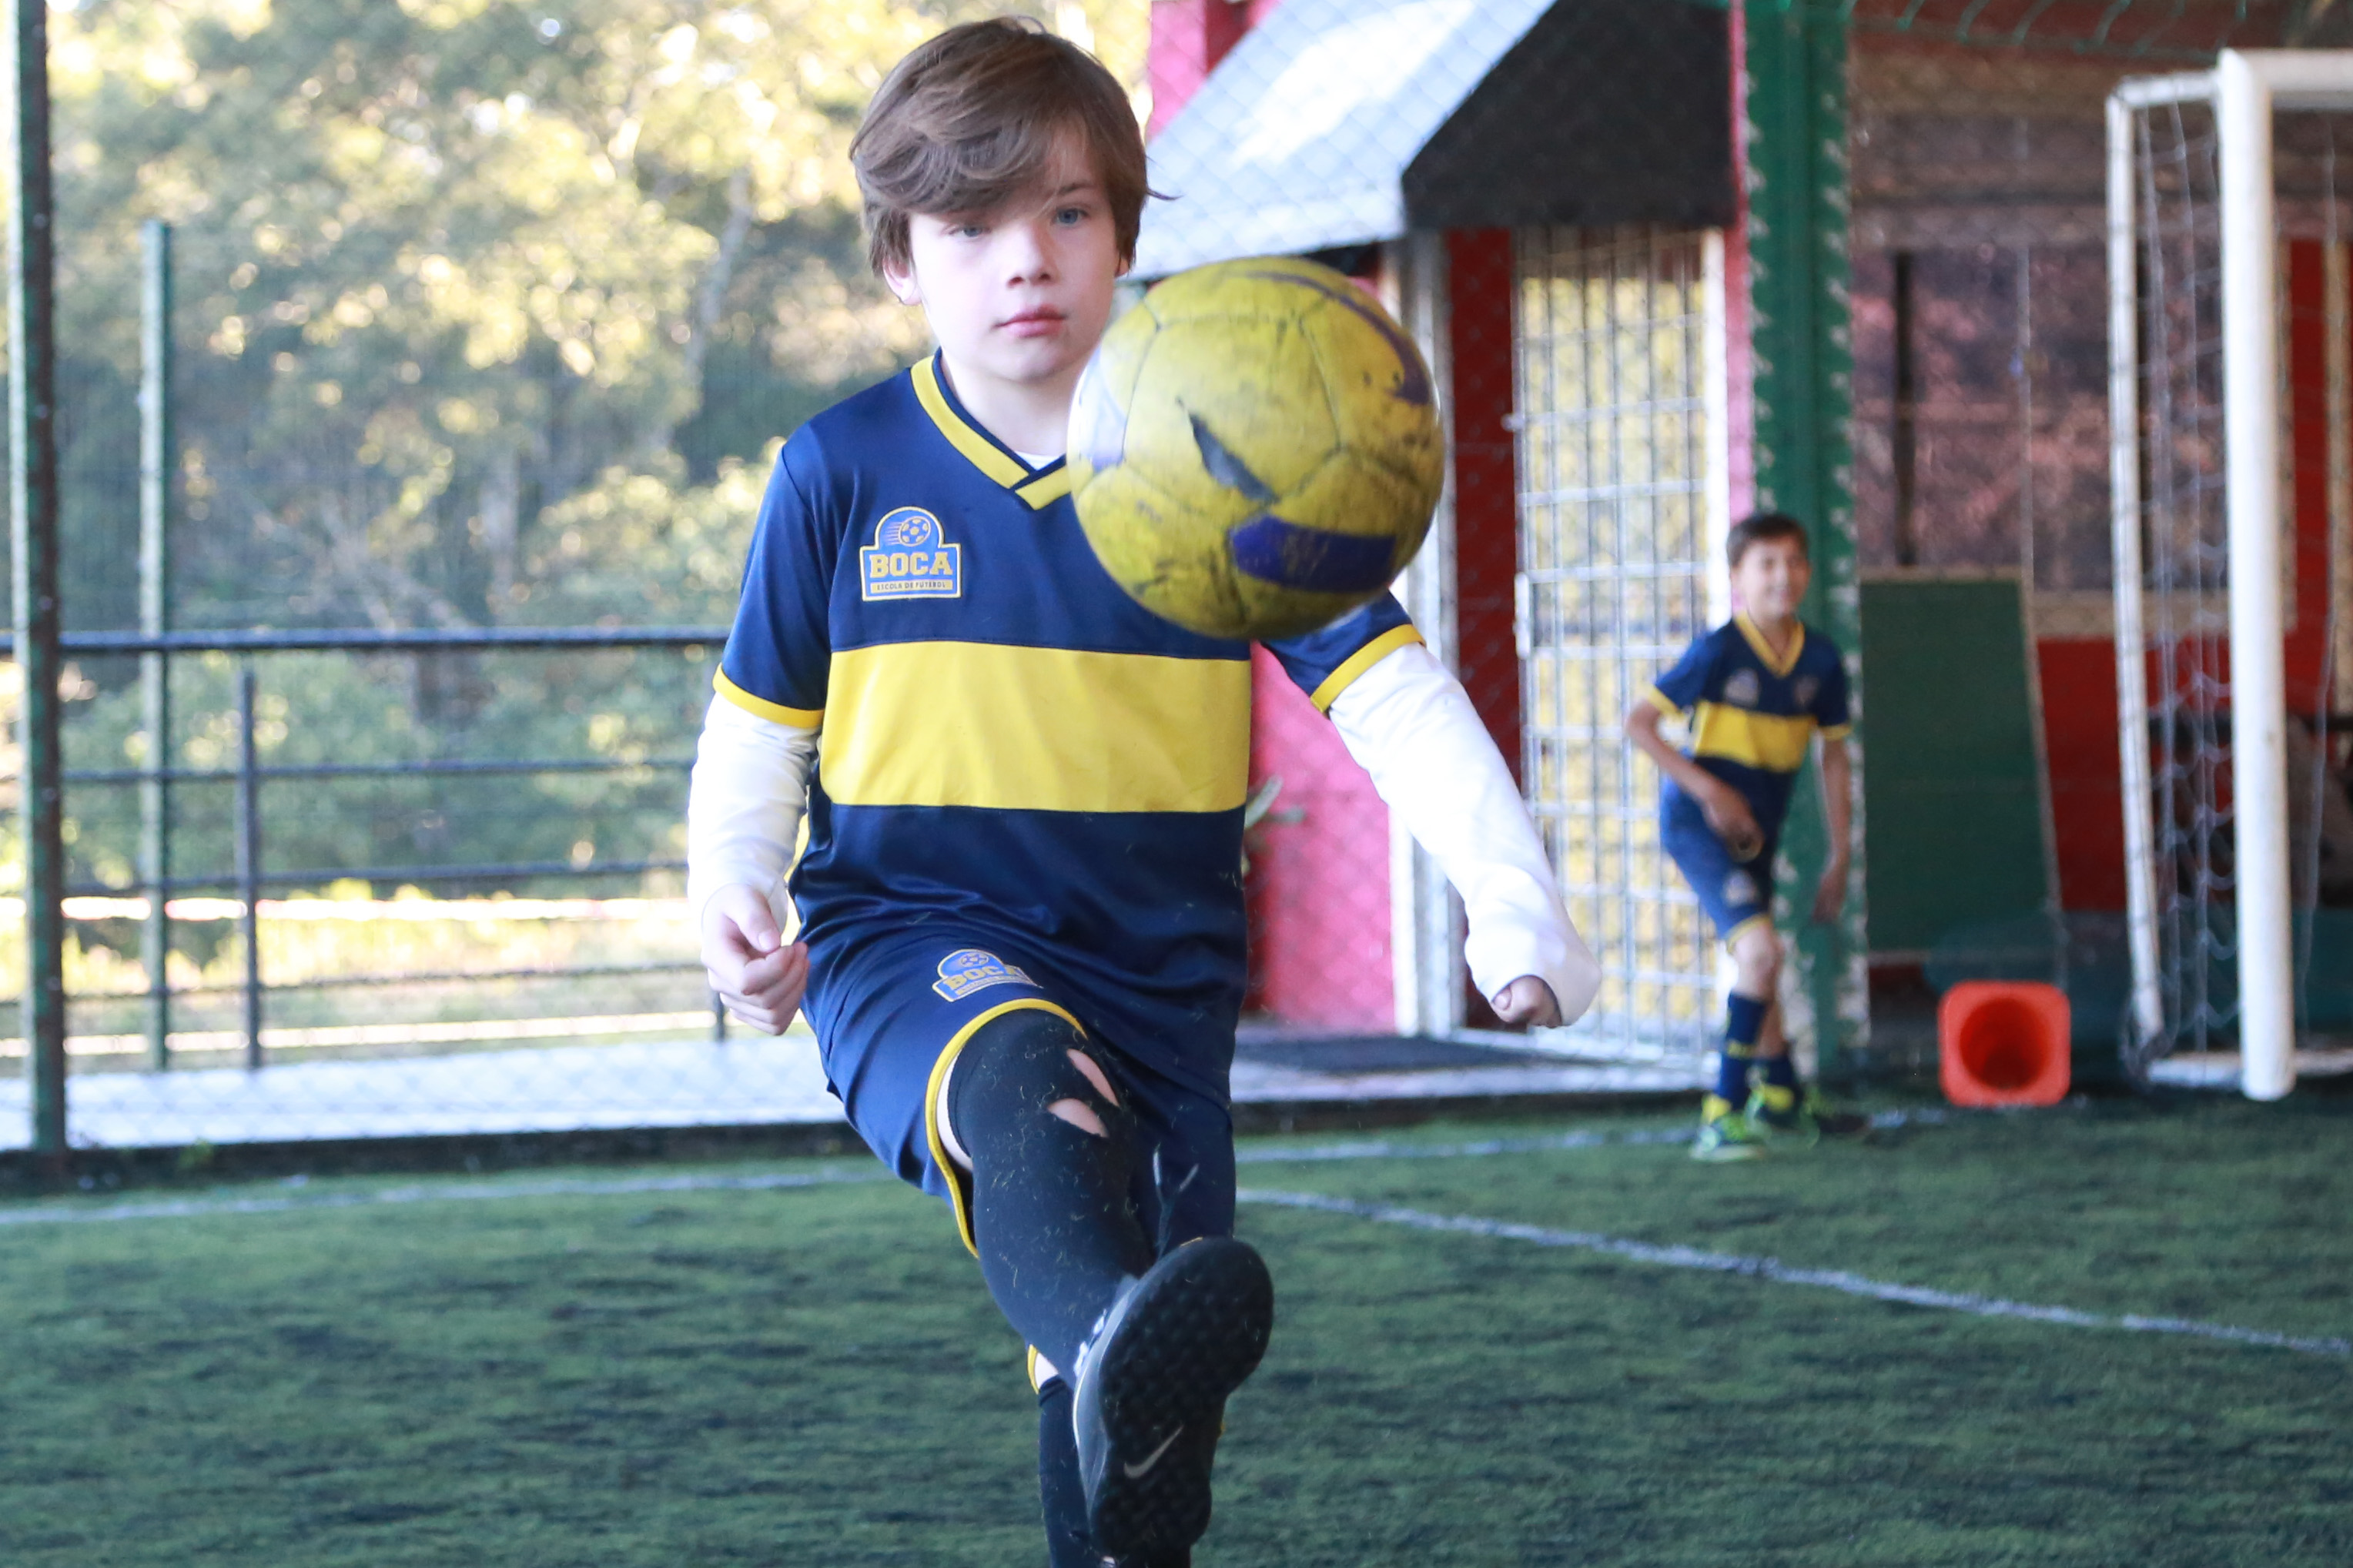 Iago joga na escolinha do Boca, mas é fanático pelo Athletico. Foto: Felipe Rosa.